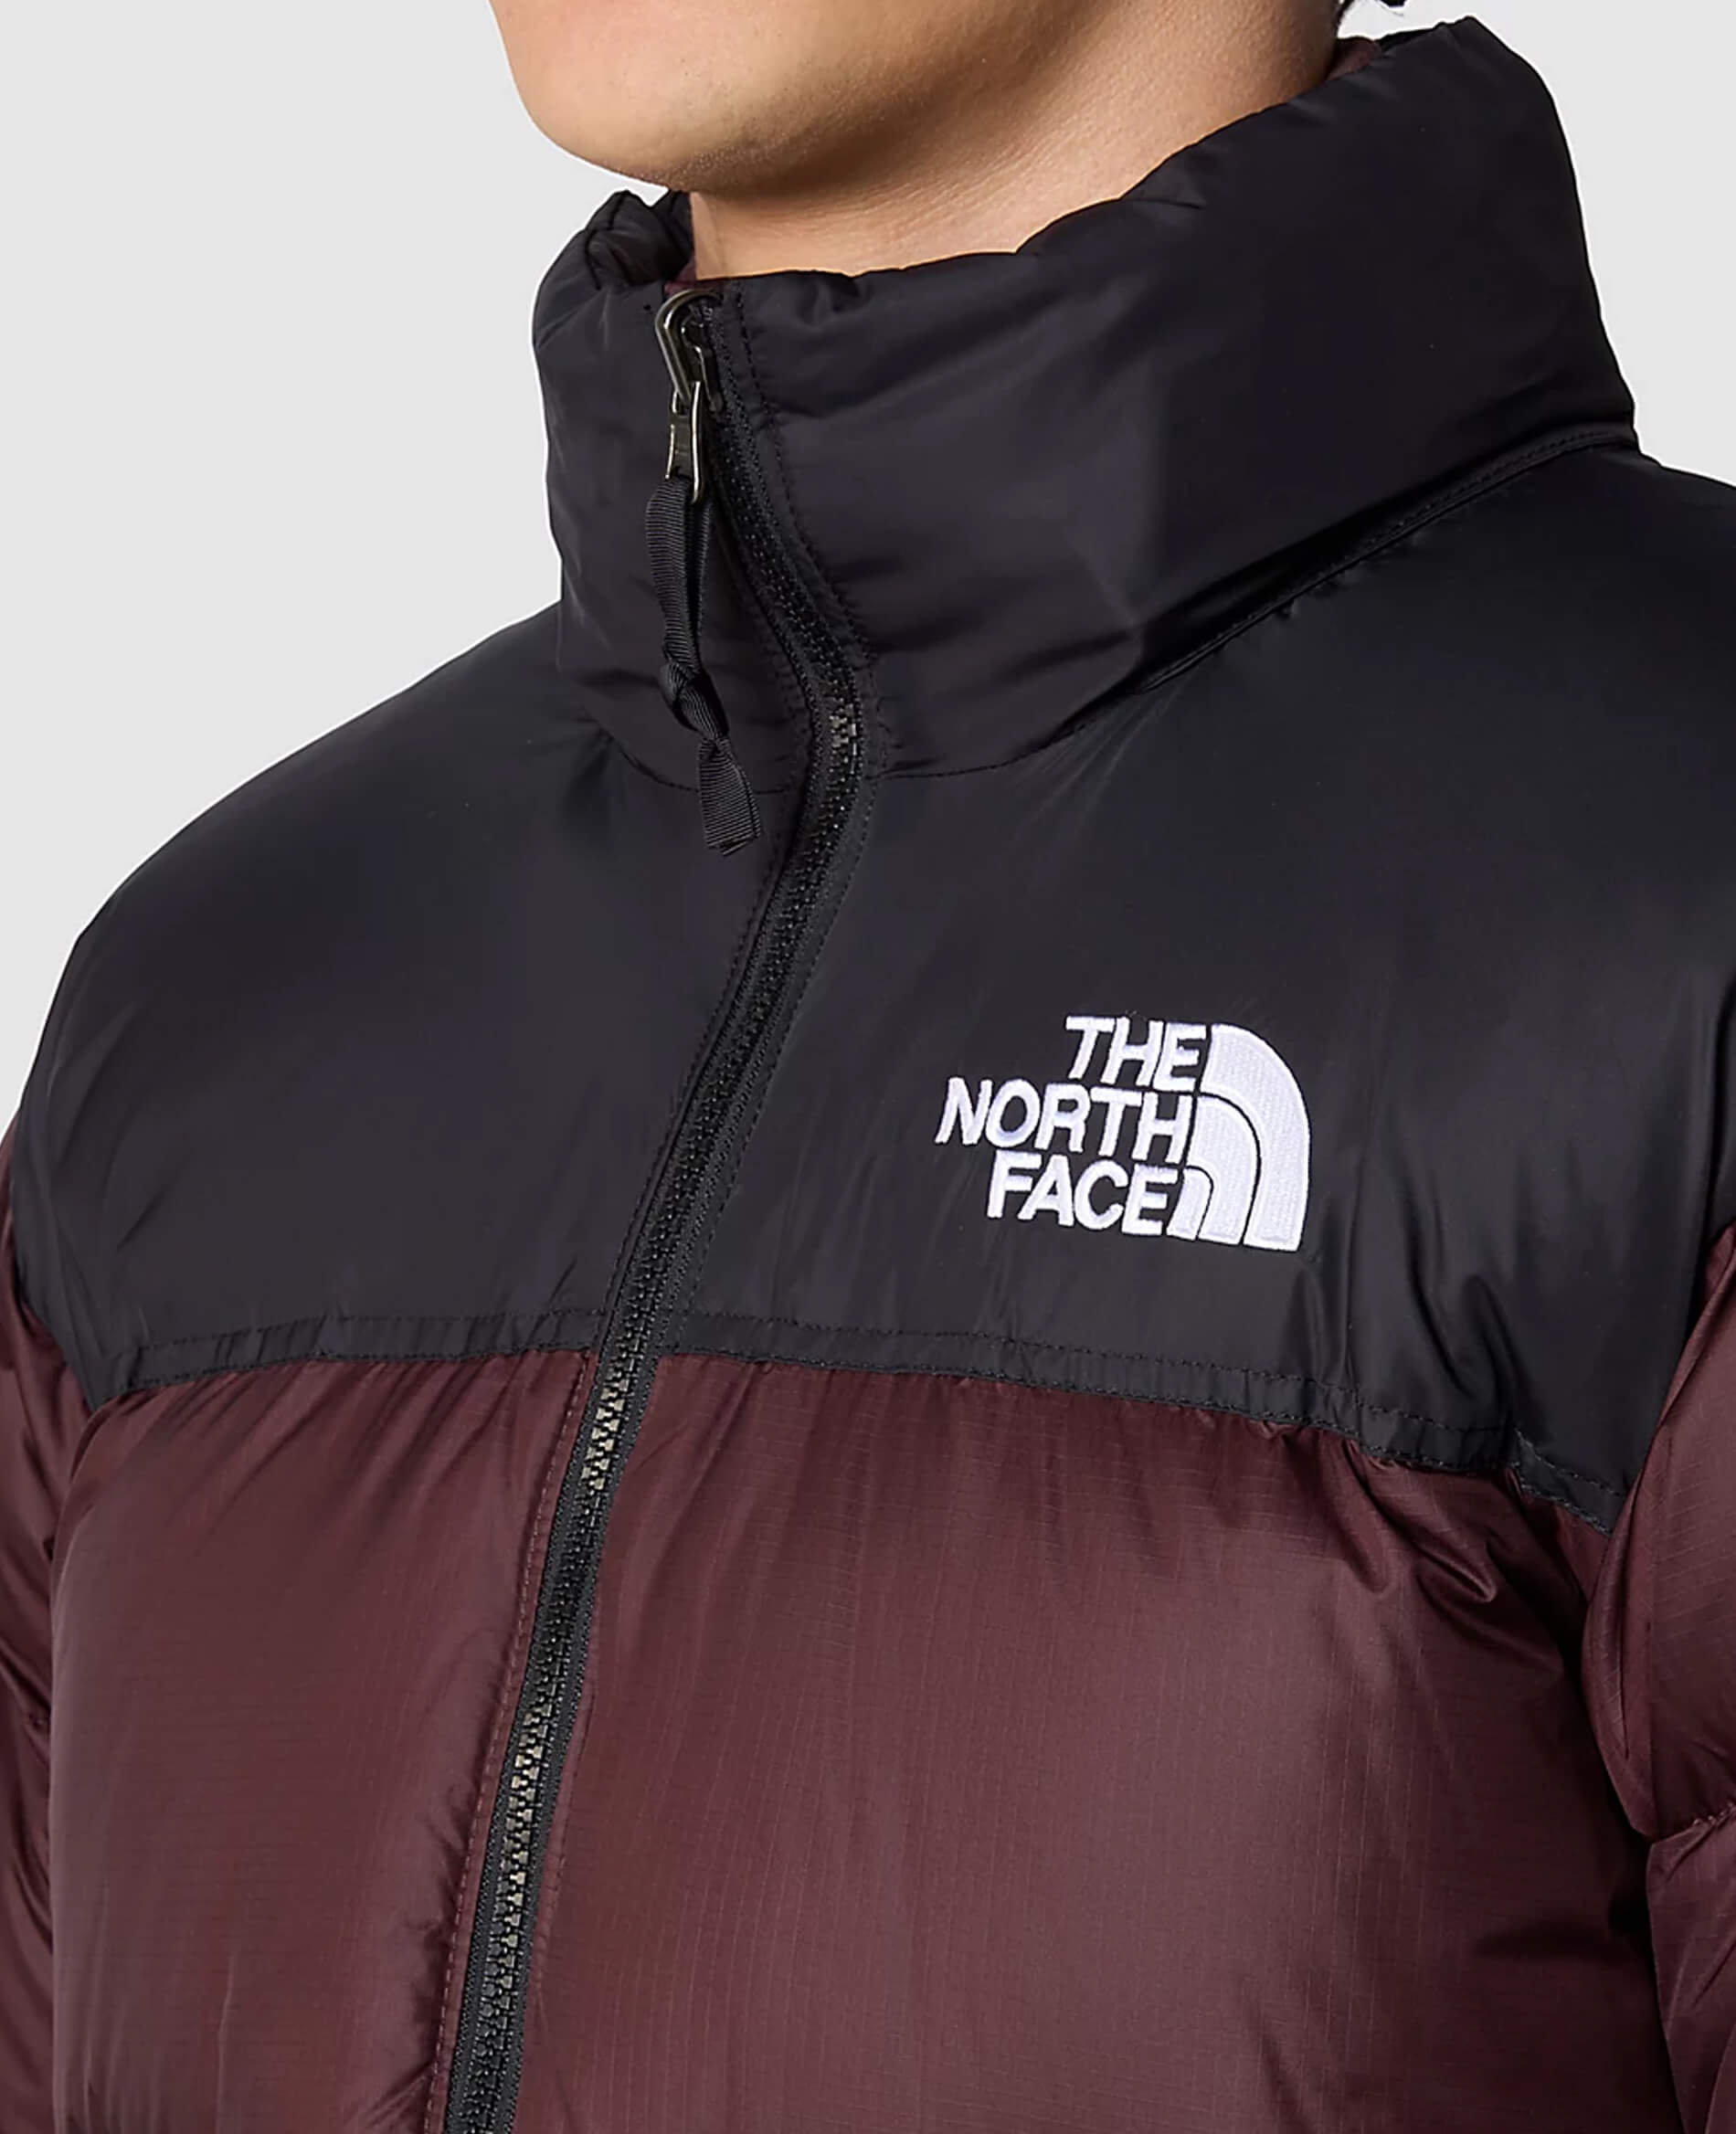 The North Face Men's 1996 Retro Nuptse Jacket